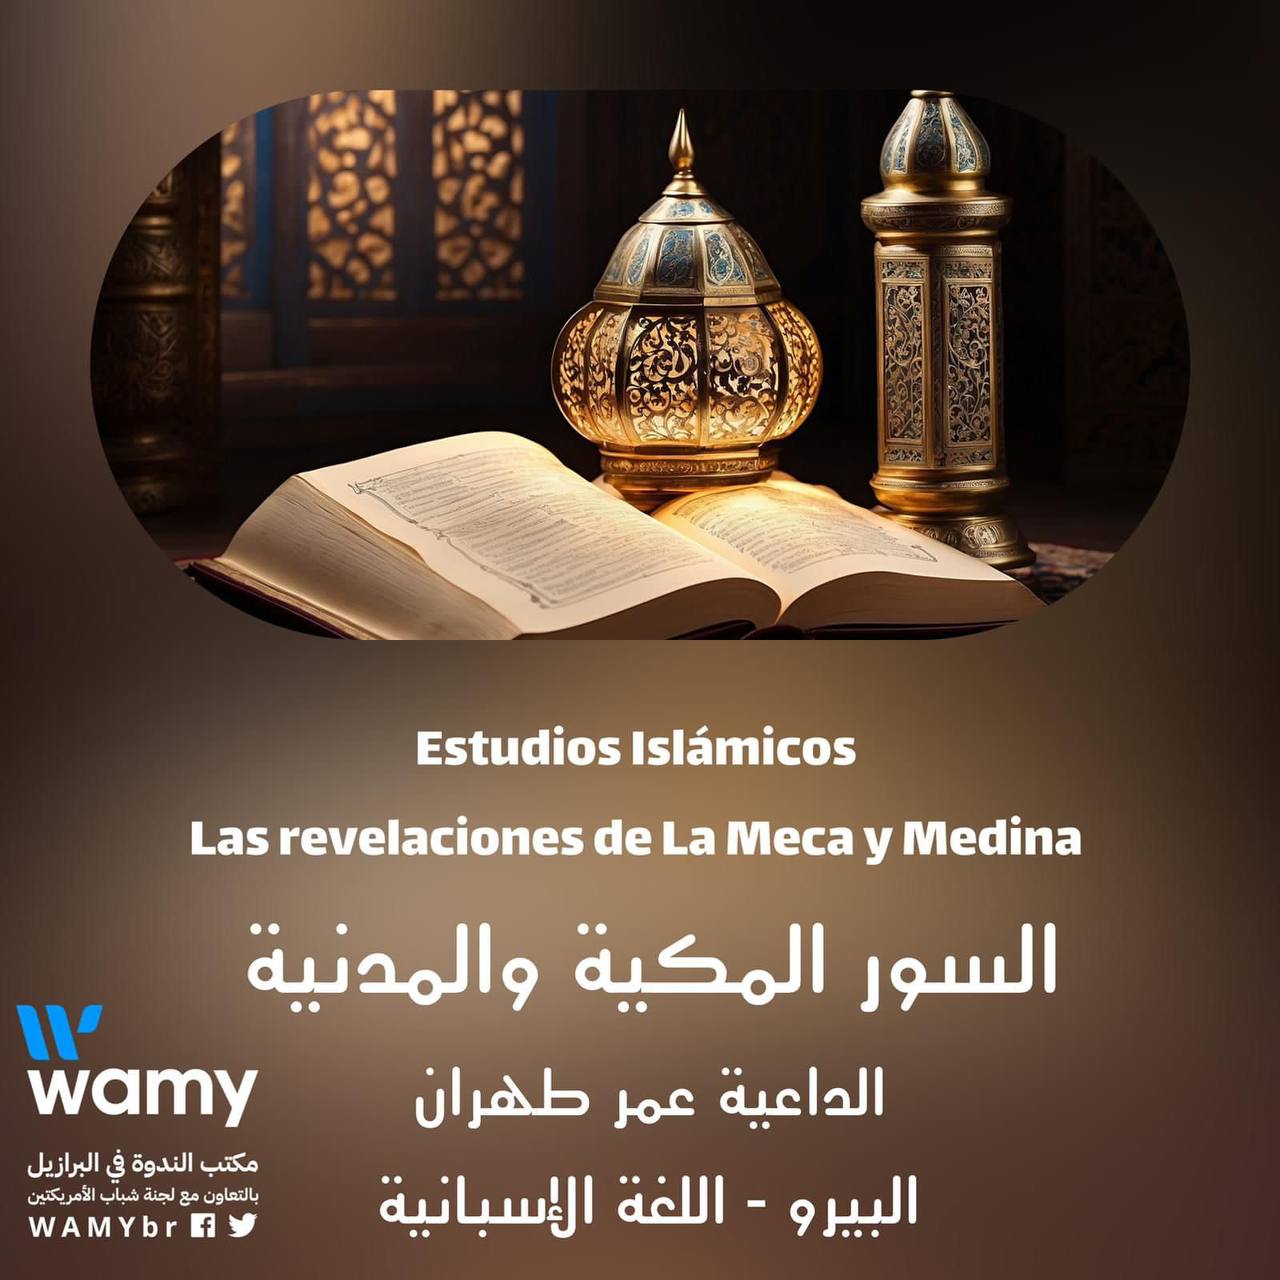 Las revelaciones de La Meca y Medina